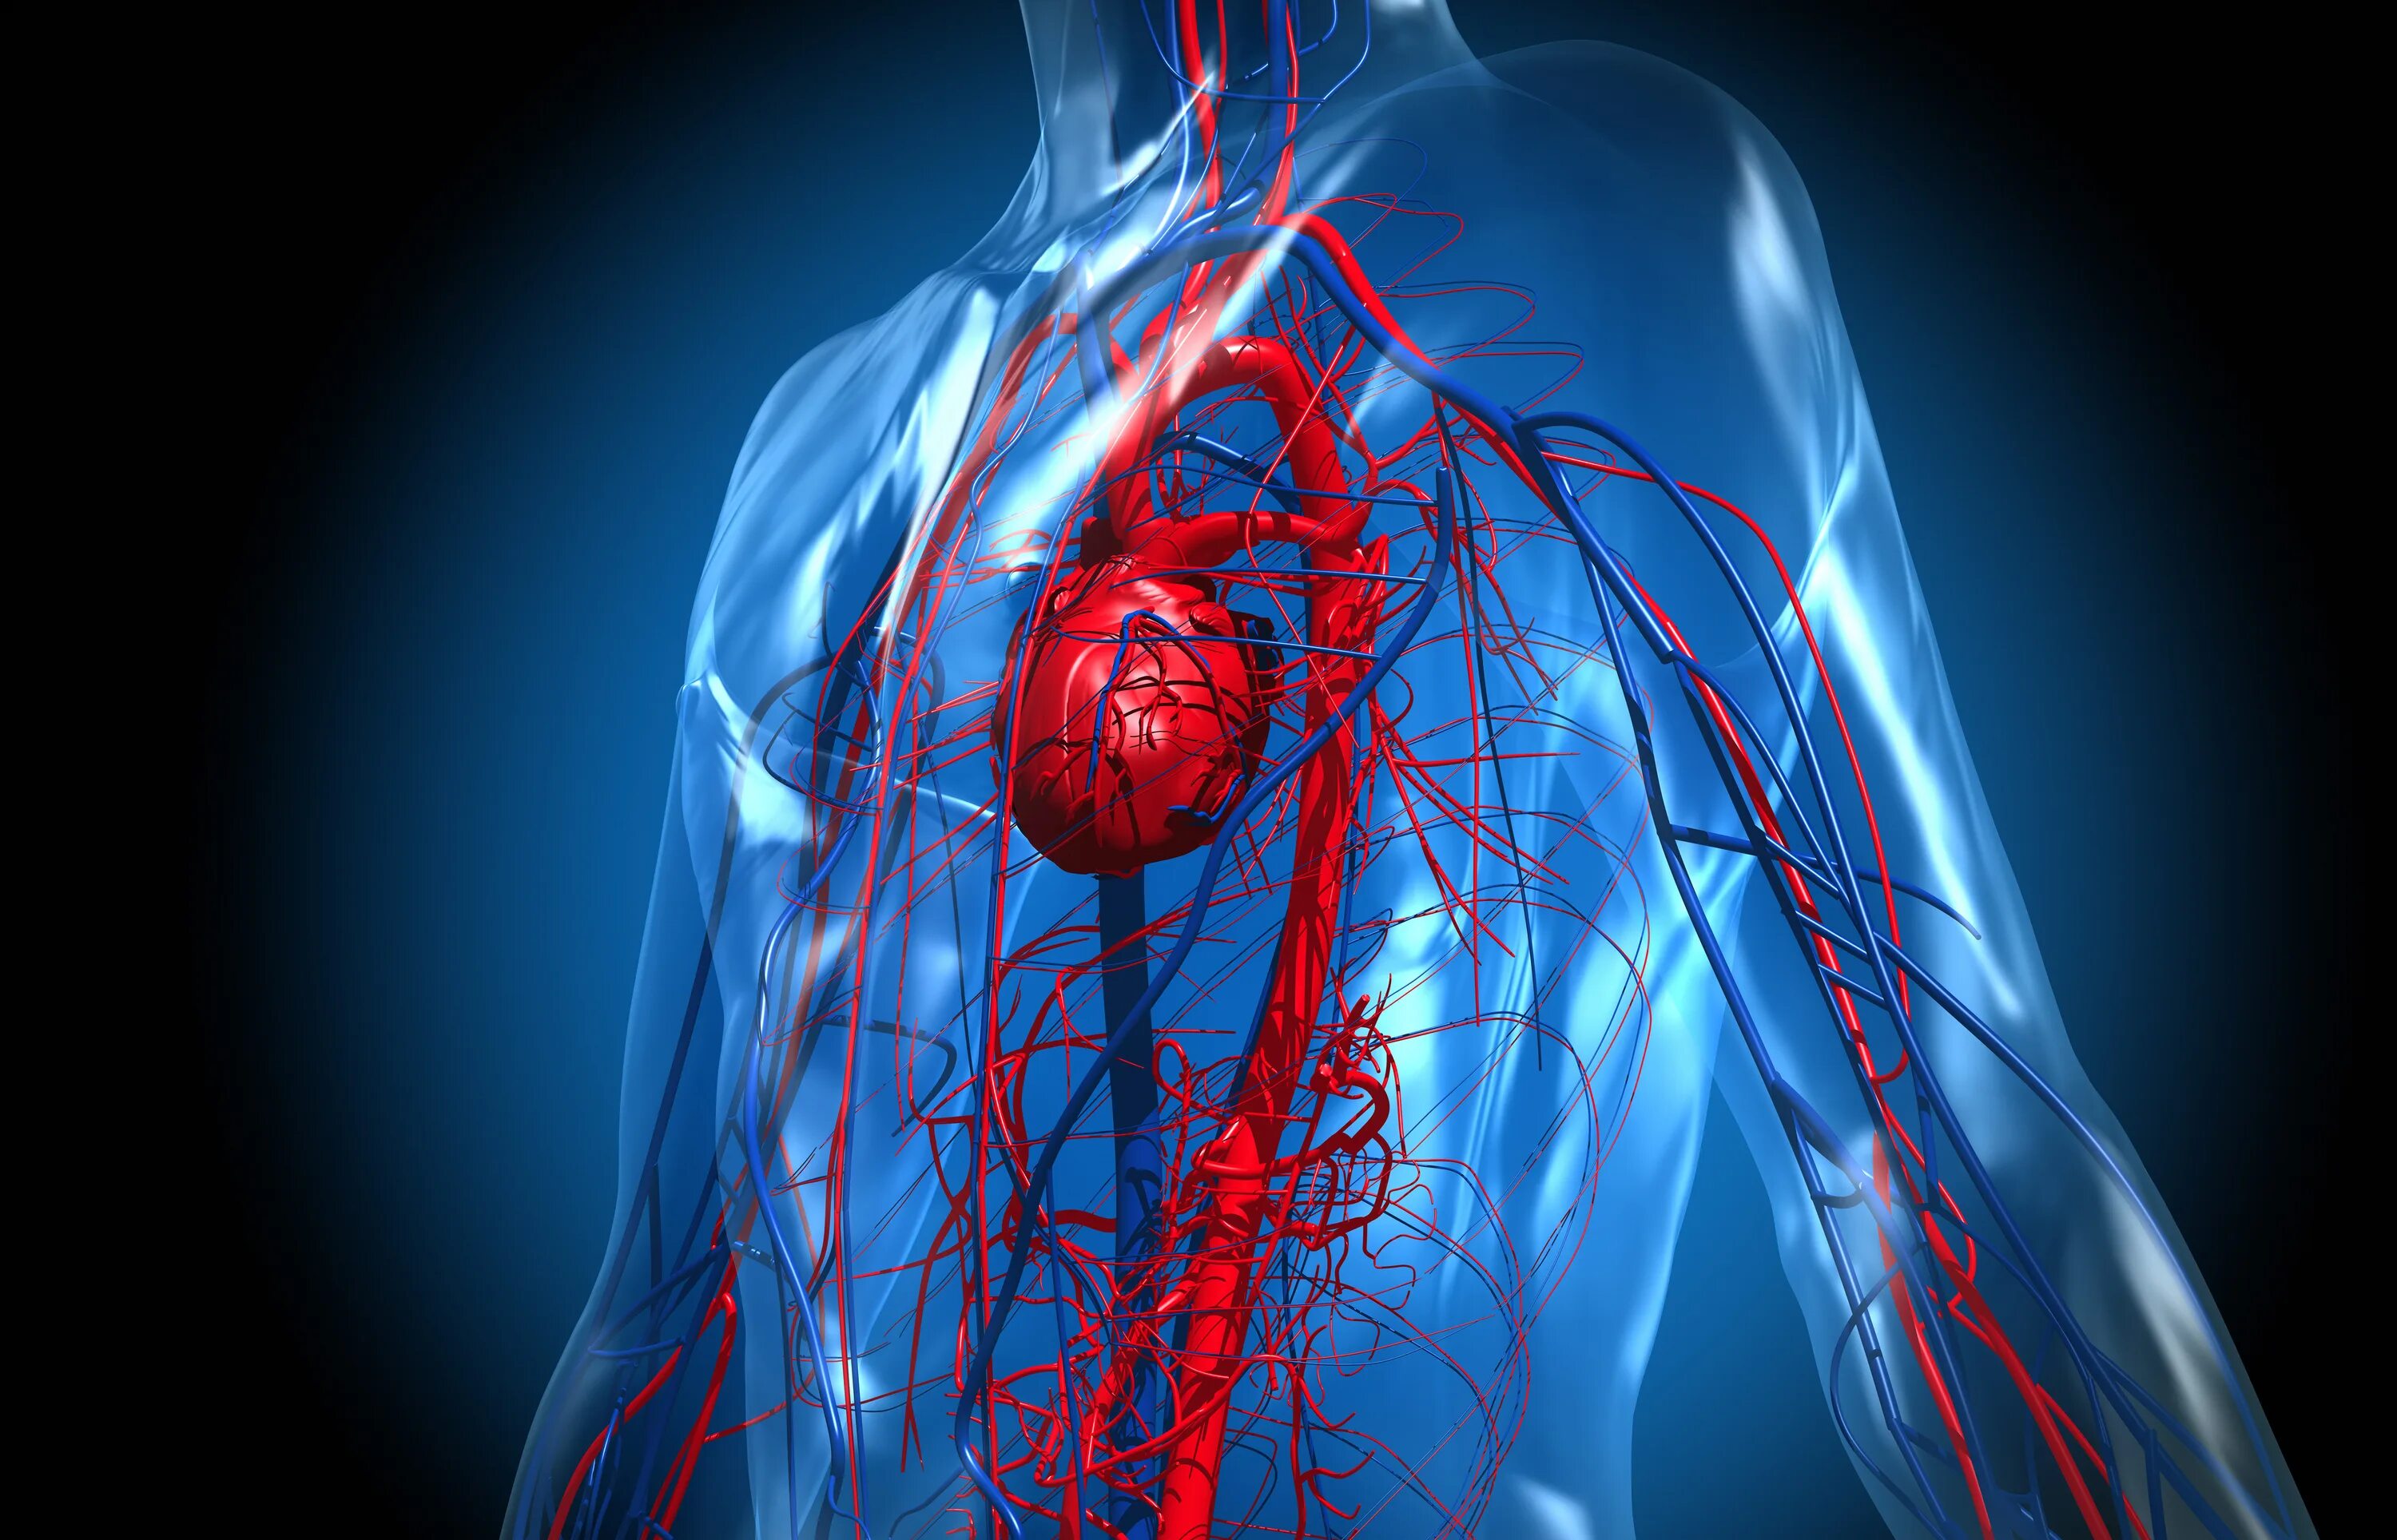 Cardiovascular system. Сосуды сердца. Сердечно сосудистая система. Кровеносная система сердца.